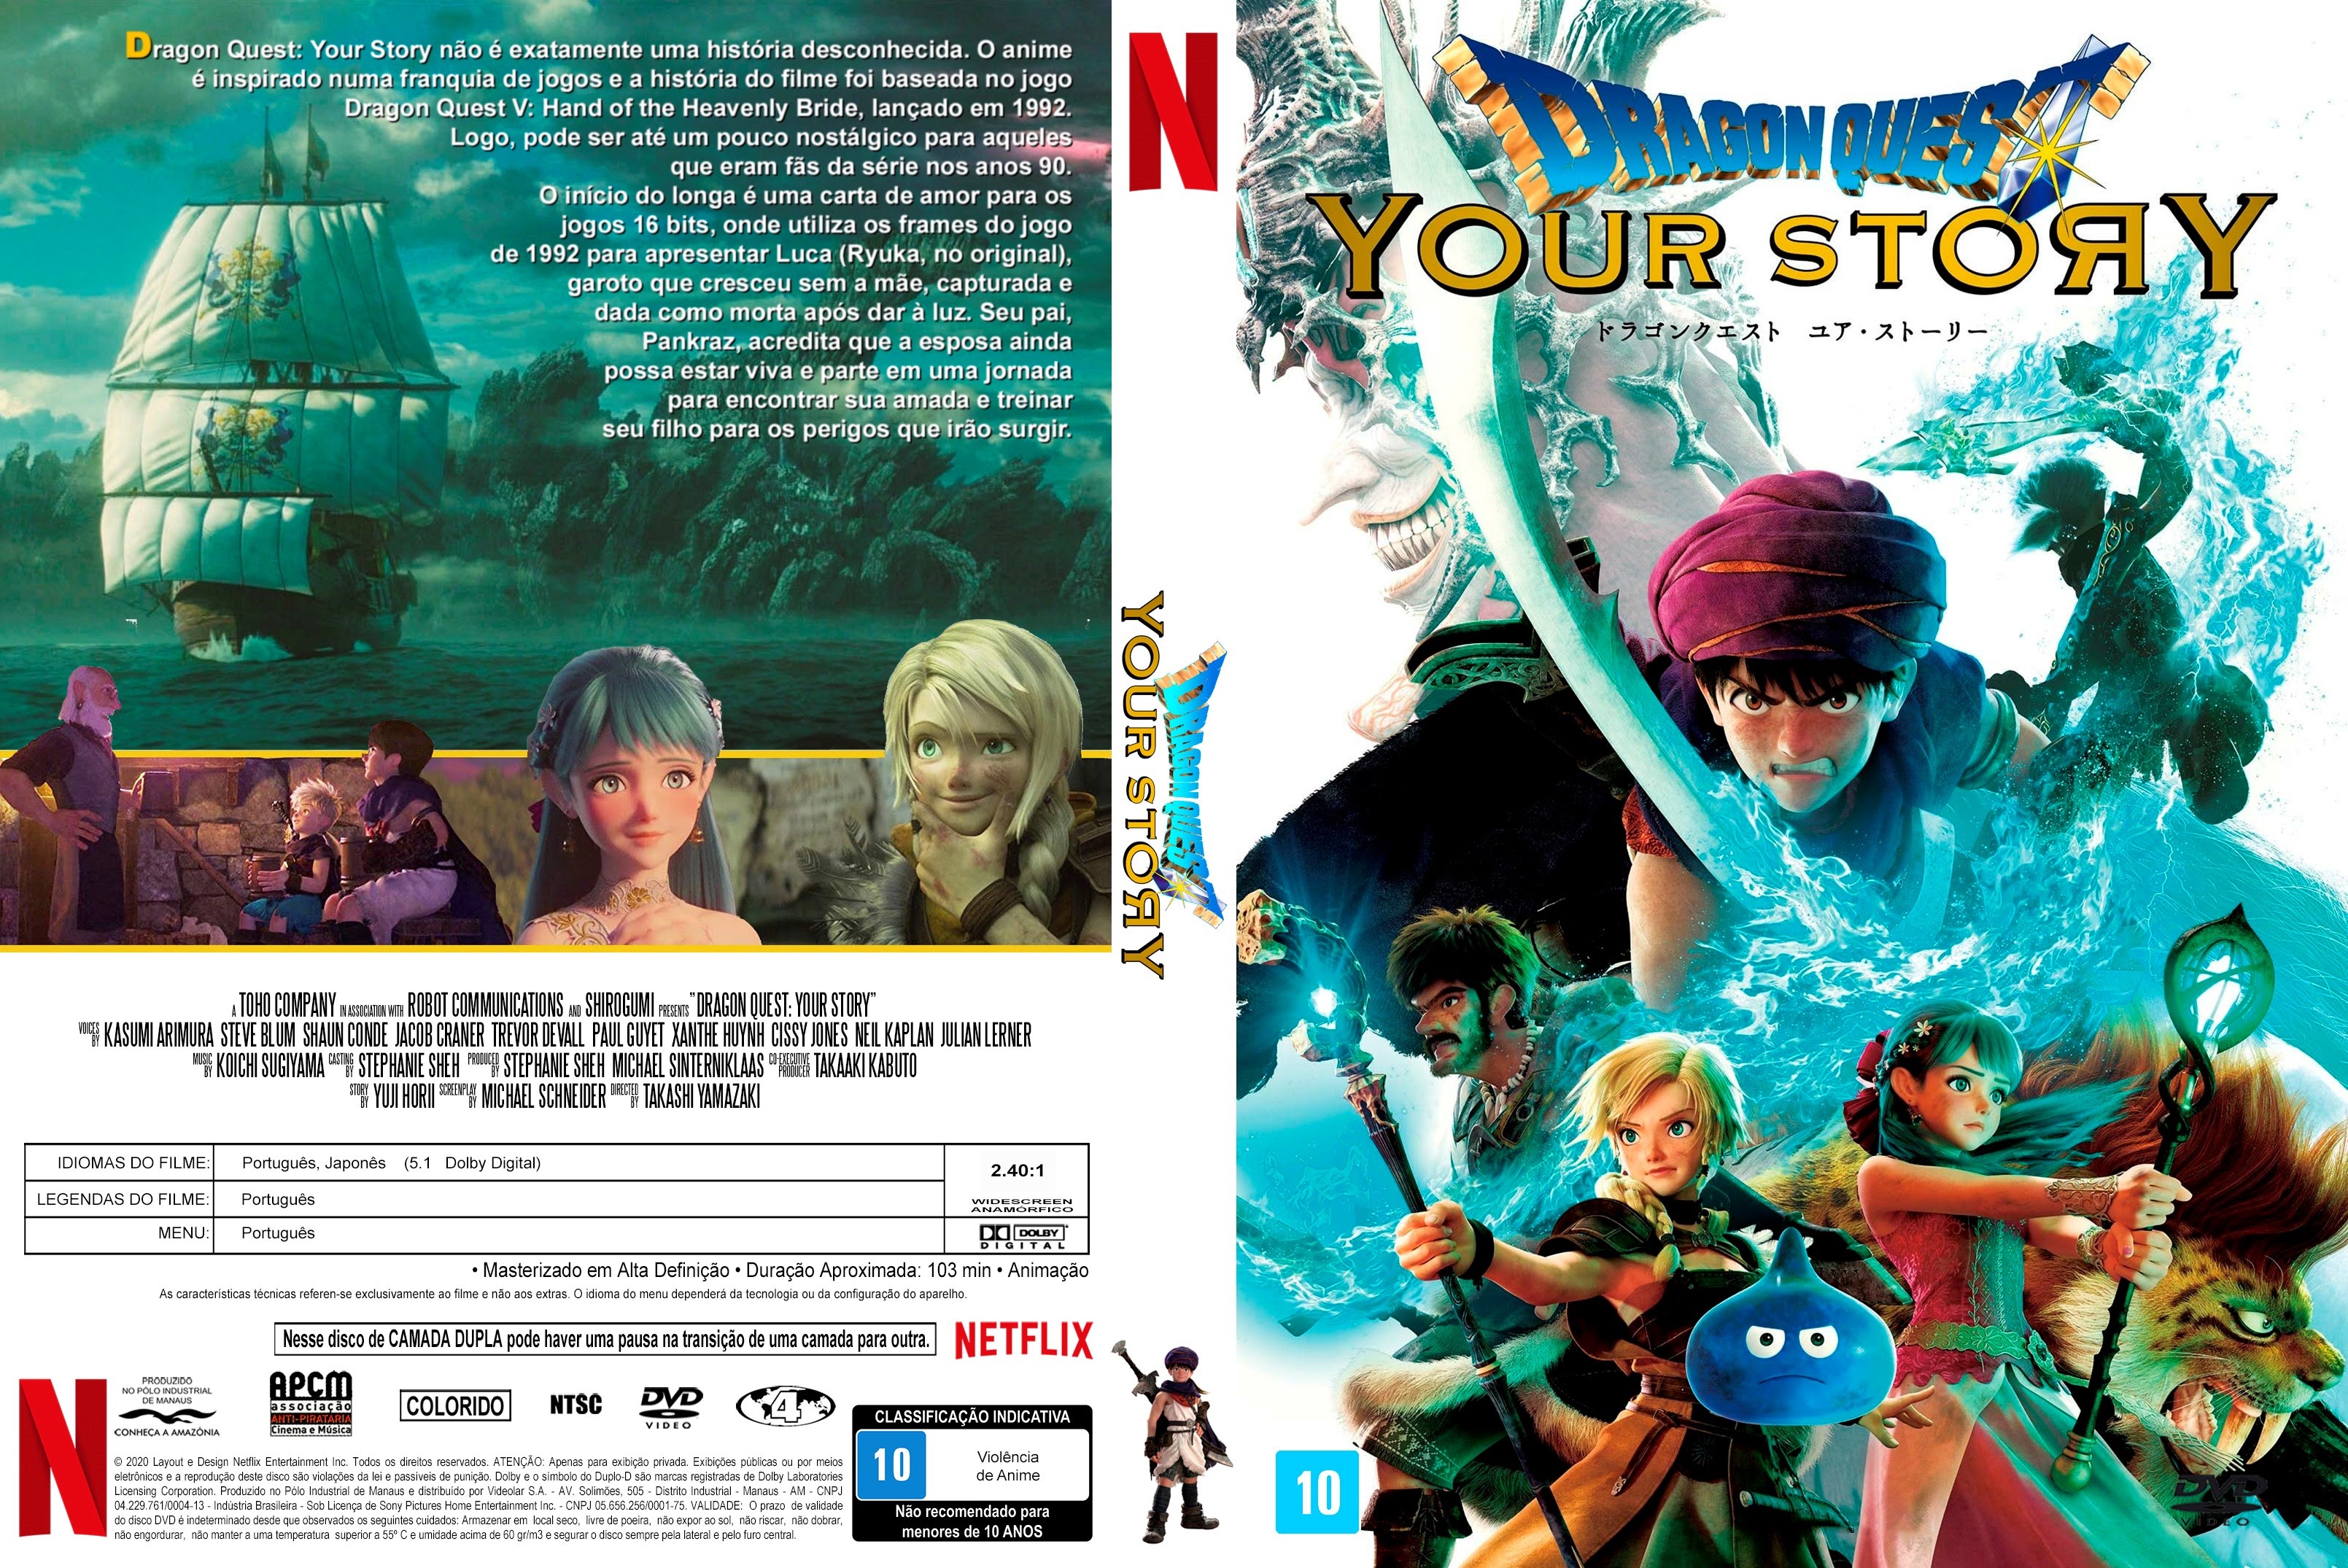 TRAILER DUBLADO] Dragon Quest: Your Story, Exibido nos cinemas japoneses  no ano passado, o filme 'Dragon Quest: Your Story', baseado no game 'Dragon  Quest V', estreou hoje na Netflix! Saiba mais